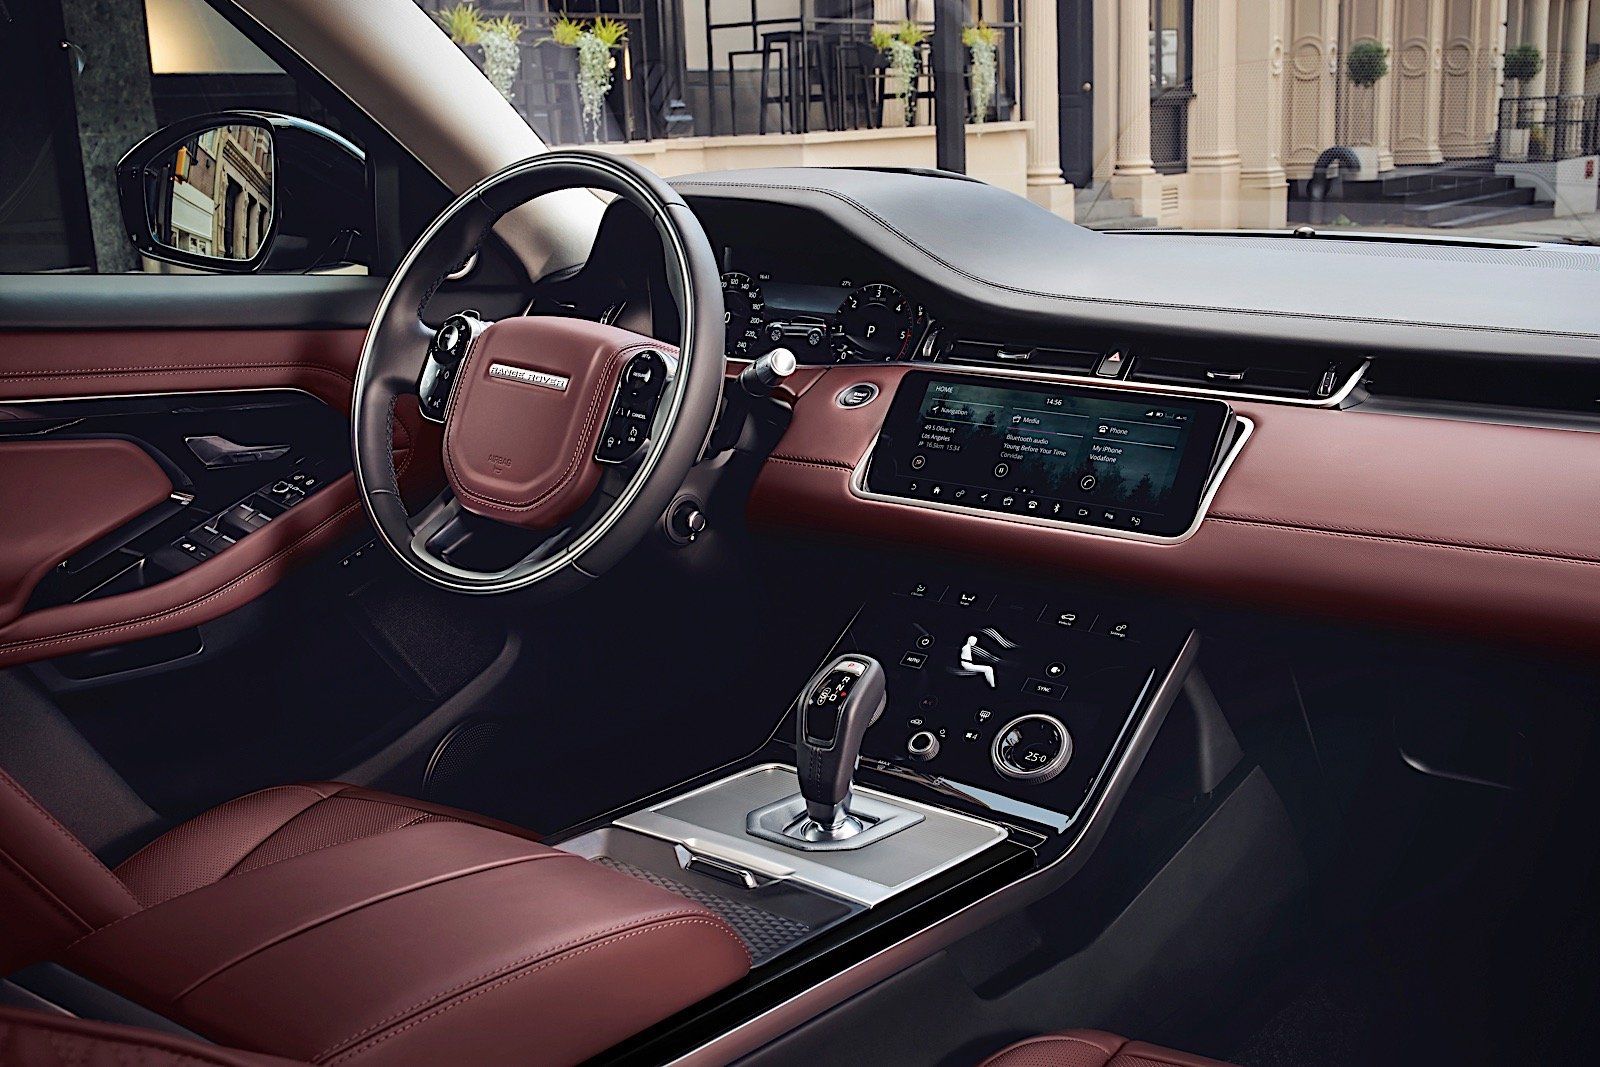 Range Rover Evoque 2020 Features